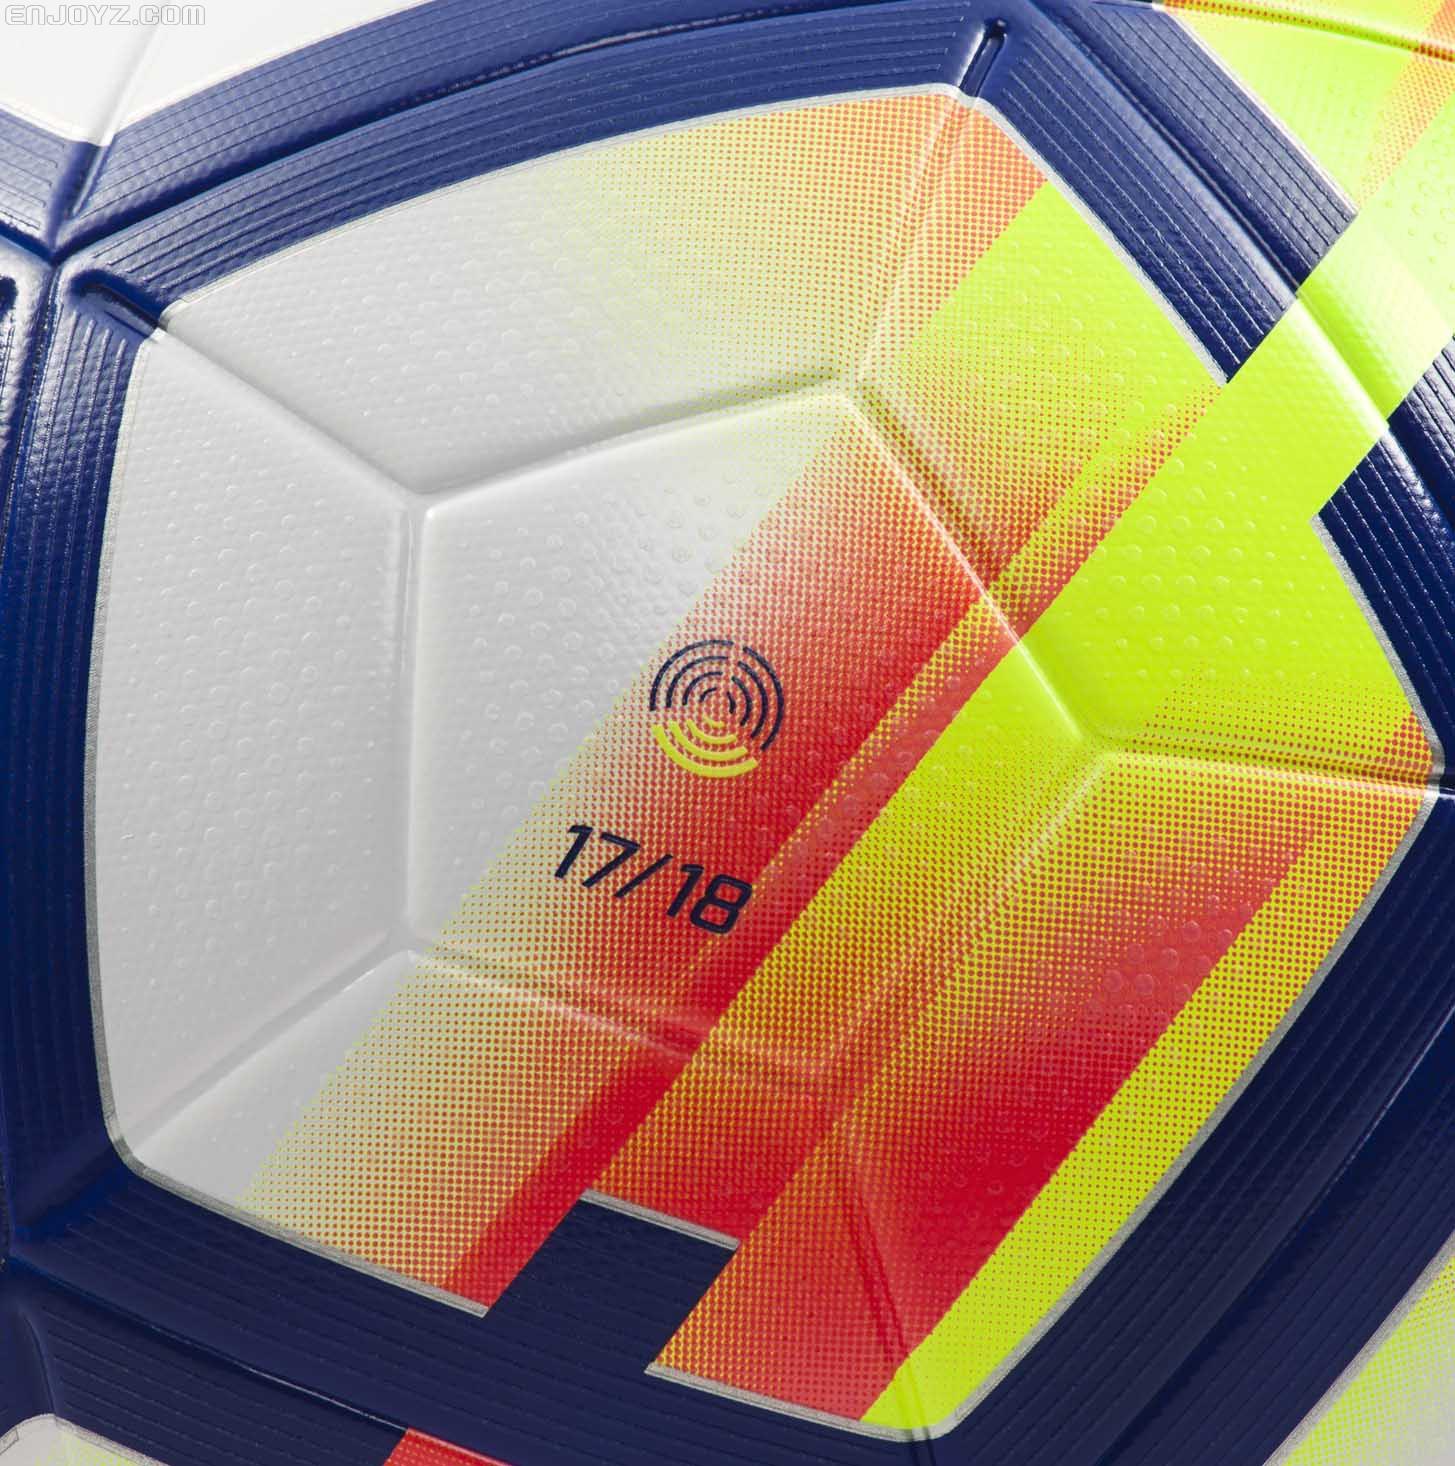 2017-18法甲比赛用球 耐克推出2017/18赛季英超比赛用球(3)